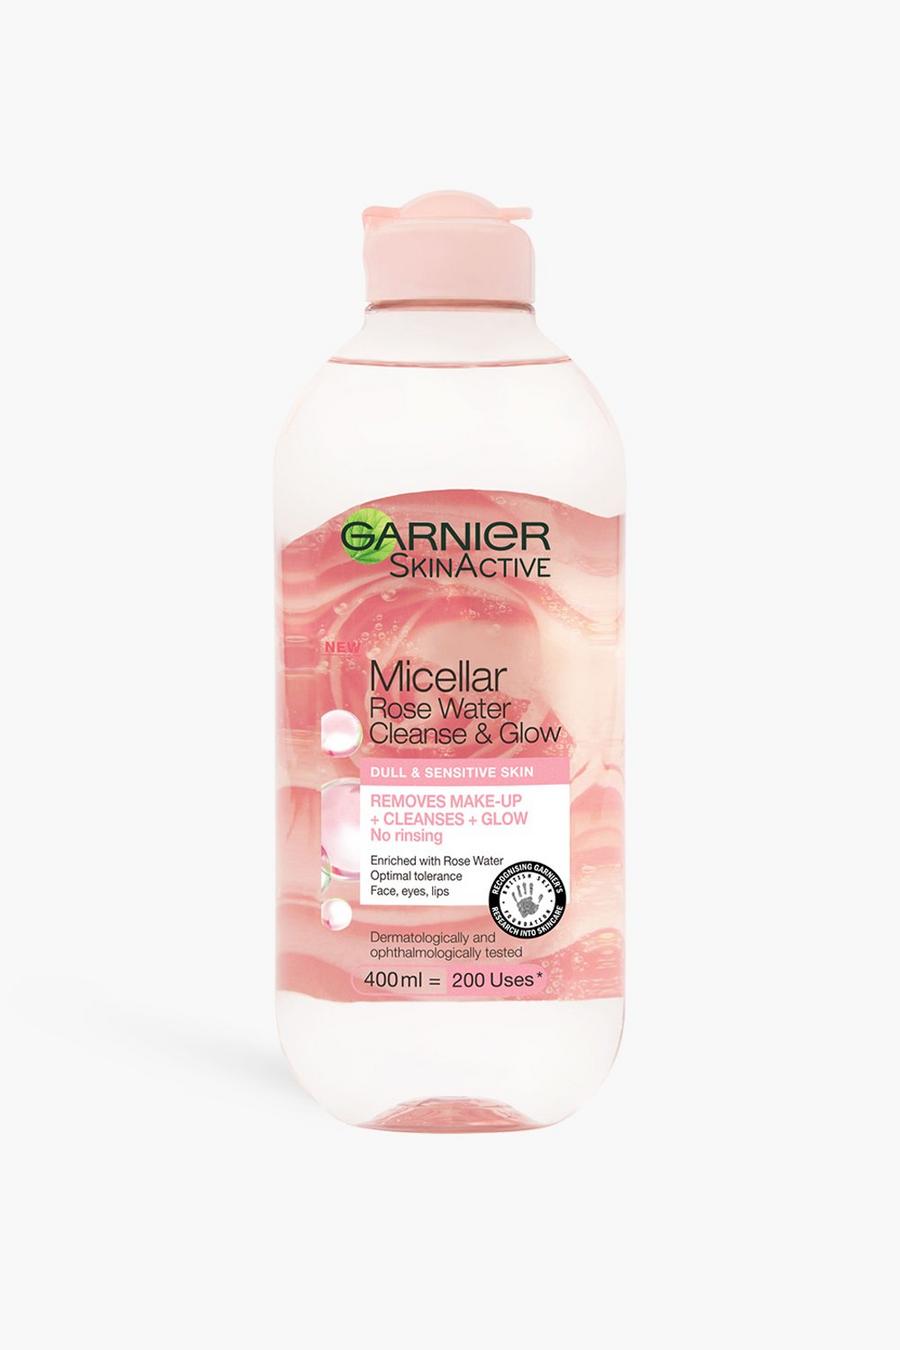 Garnier Micellar Rose Water Cleanse&Glow, Baby pink rose